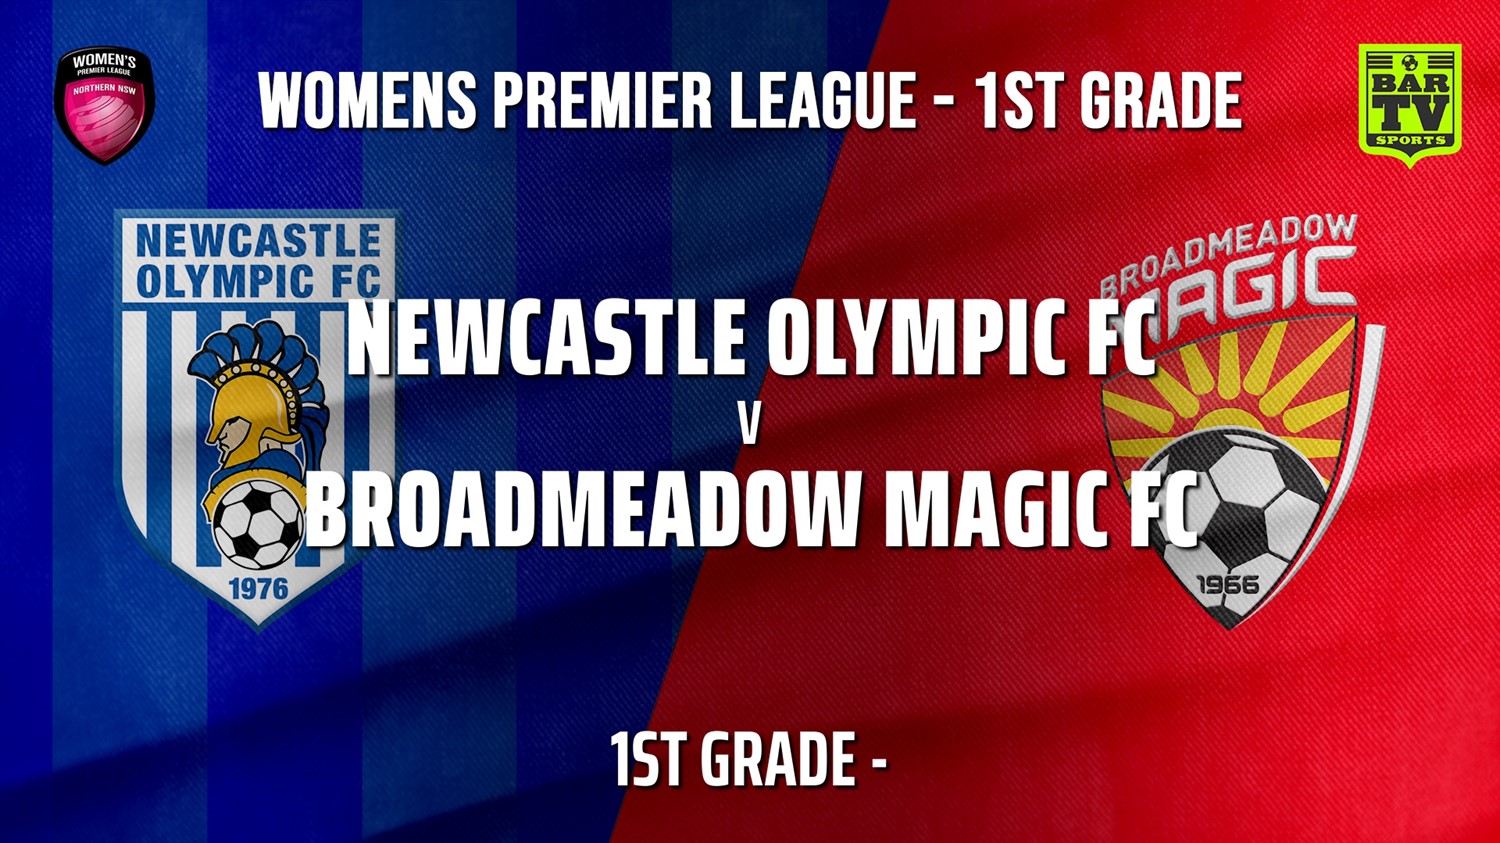 210530-Herald Women’s Premier League 1st Grade - Newcastle Olympic FC (women) v Broadmeadow Magic FC (women) Slate Image